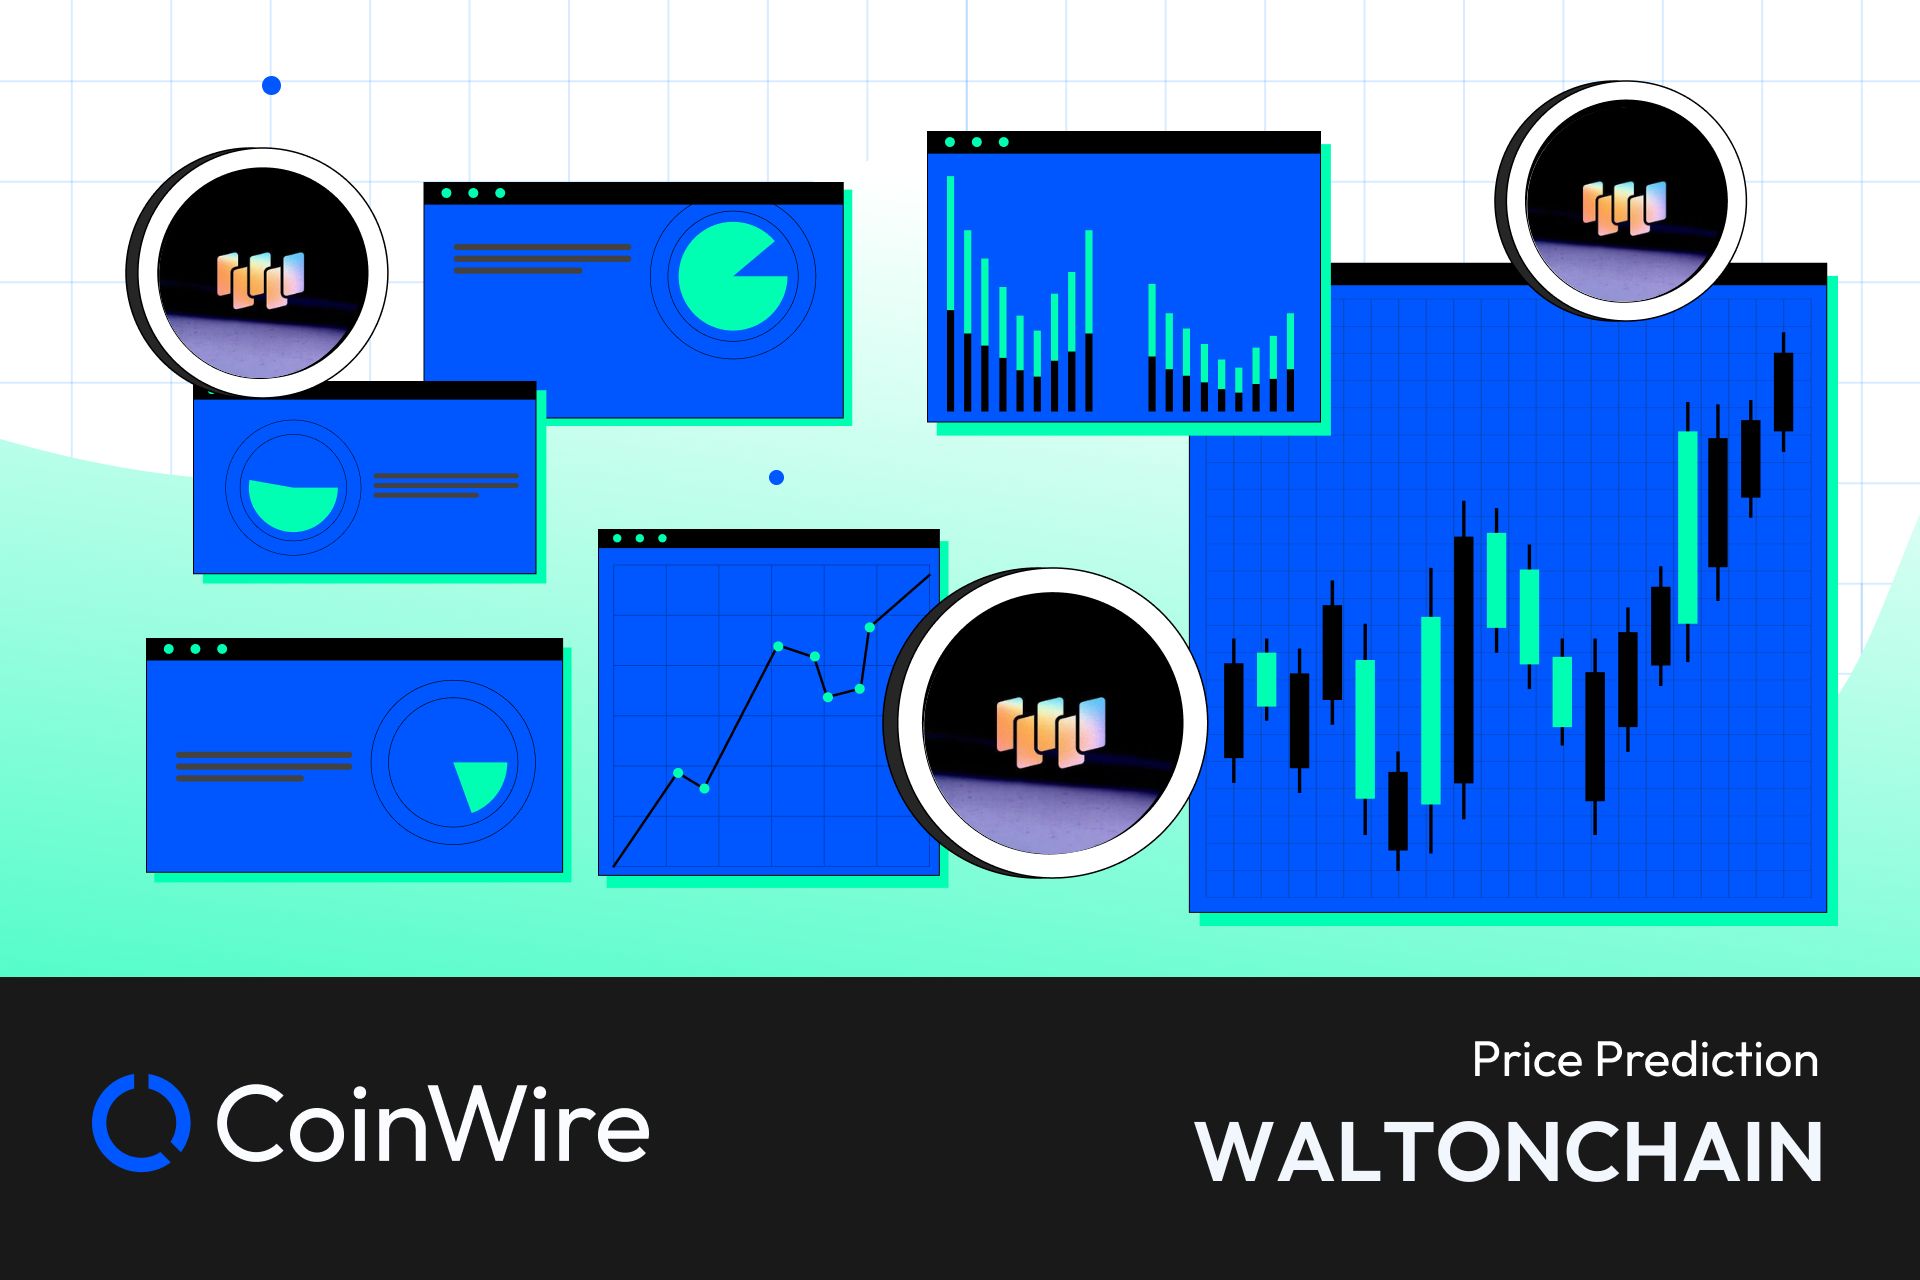 Waltonchain Price Prediction